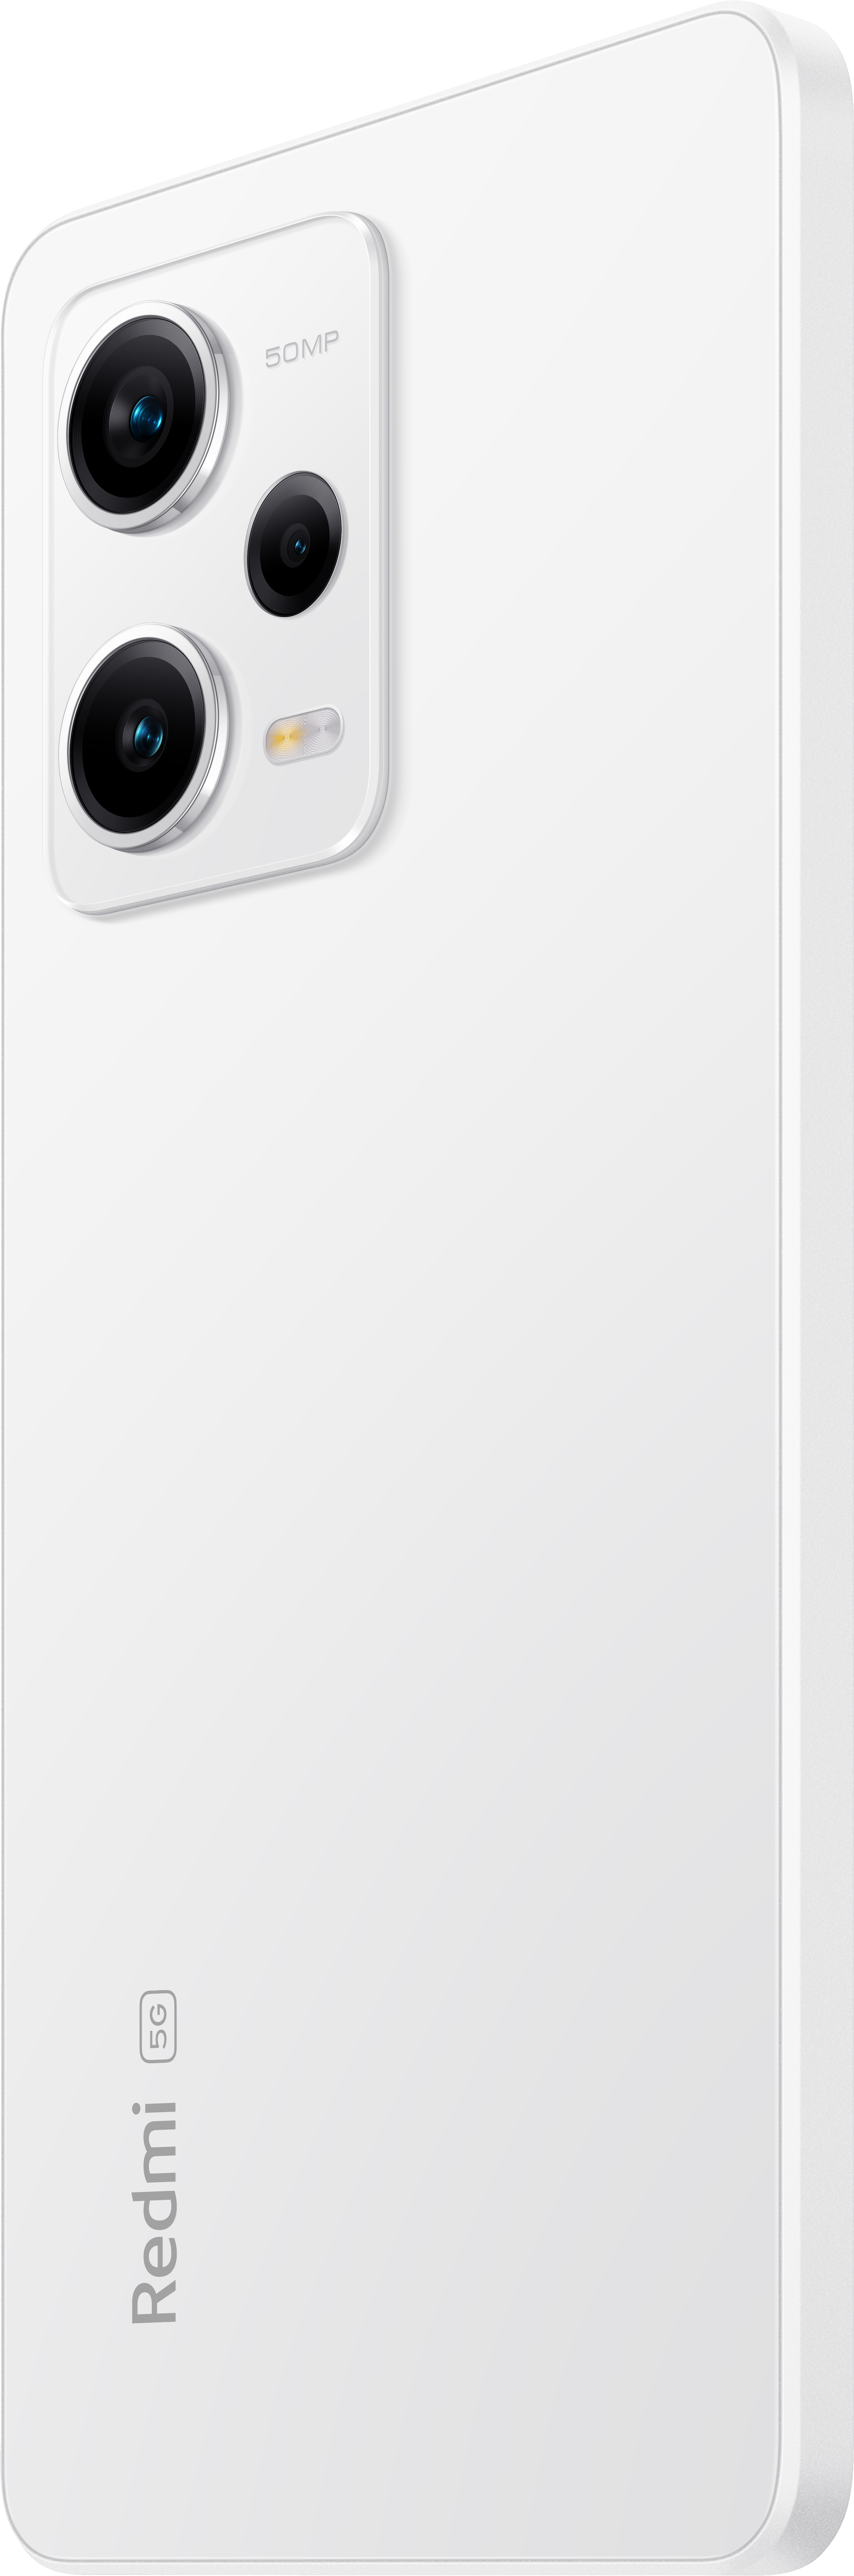 12 SIM Dual Note Redmi Pro 128 GB Polar 5G XIAOMI White